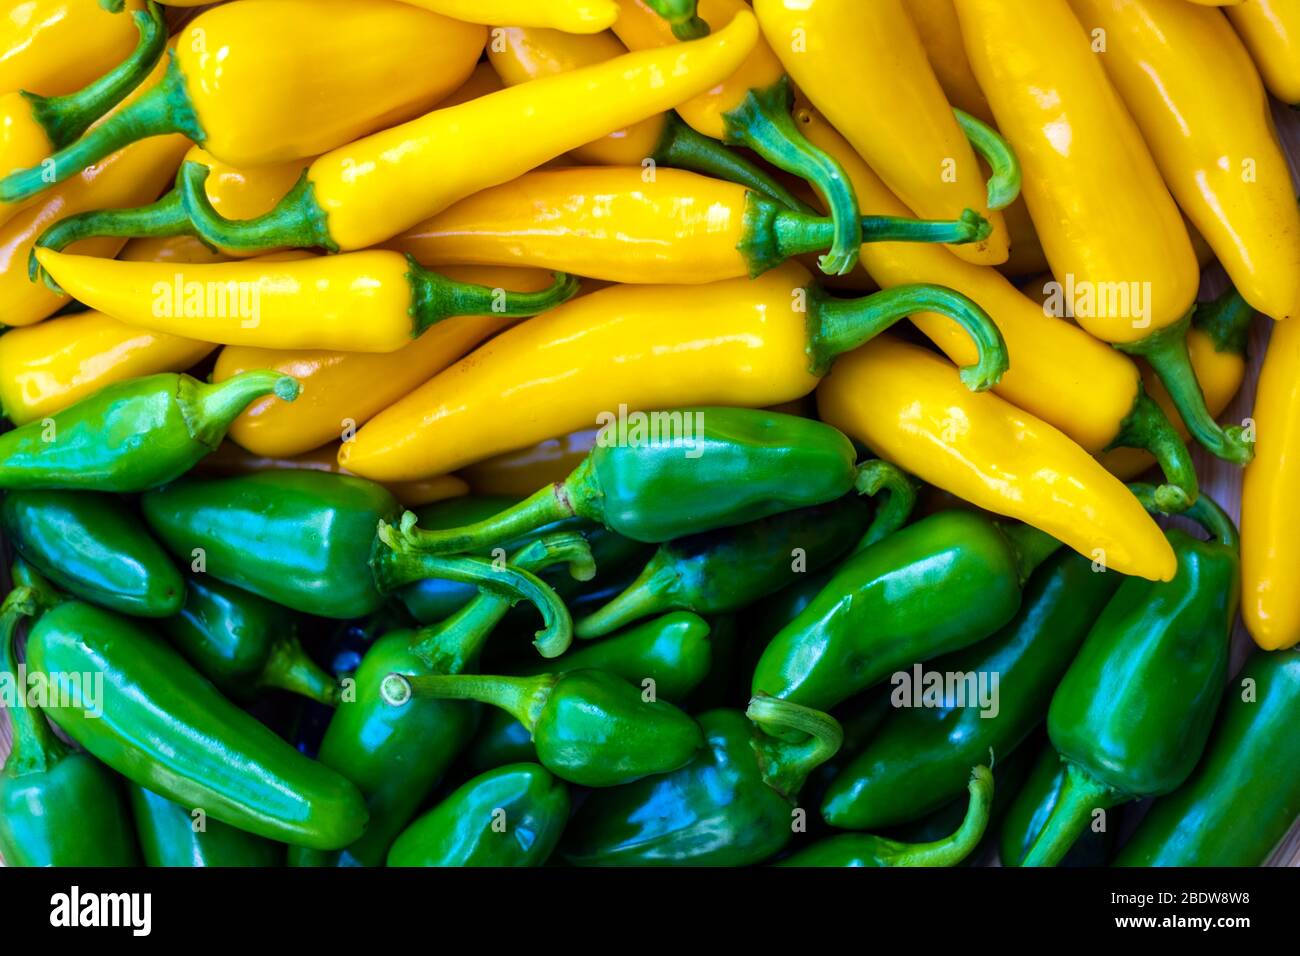 Fermeture des poivrons chauds jaunes et verts. Photographie alimentaire Banque D'Images